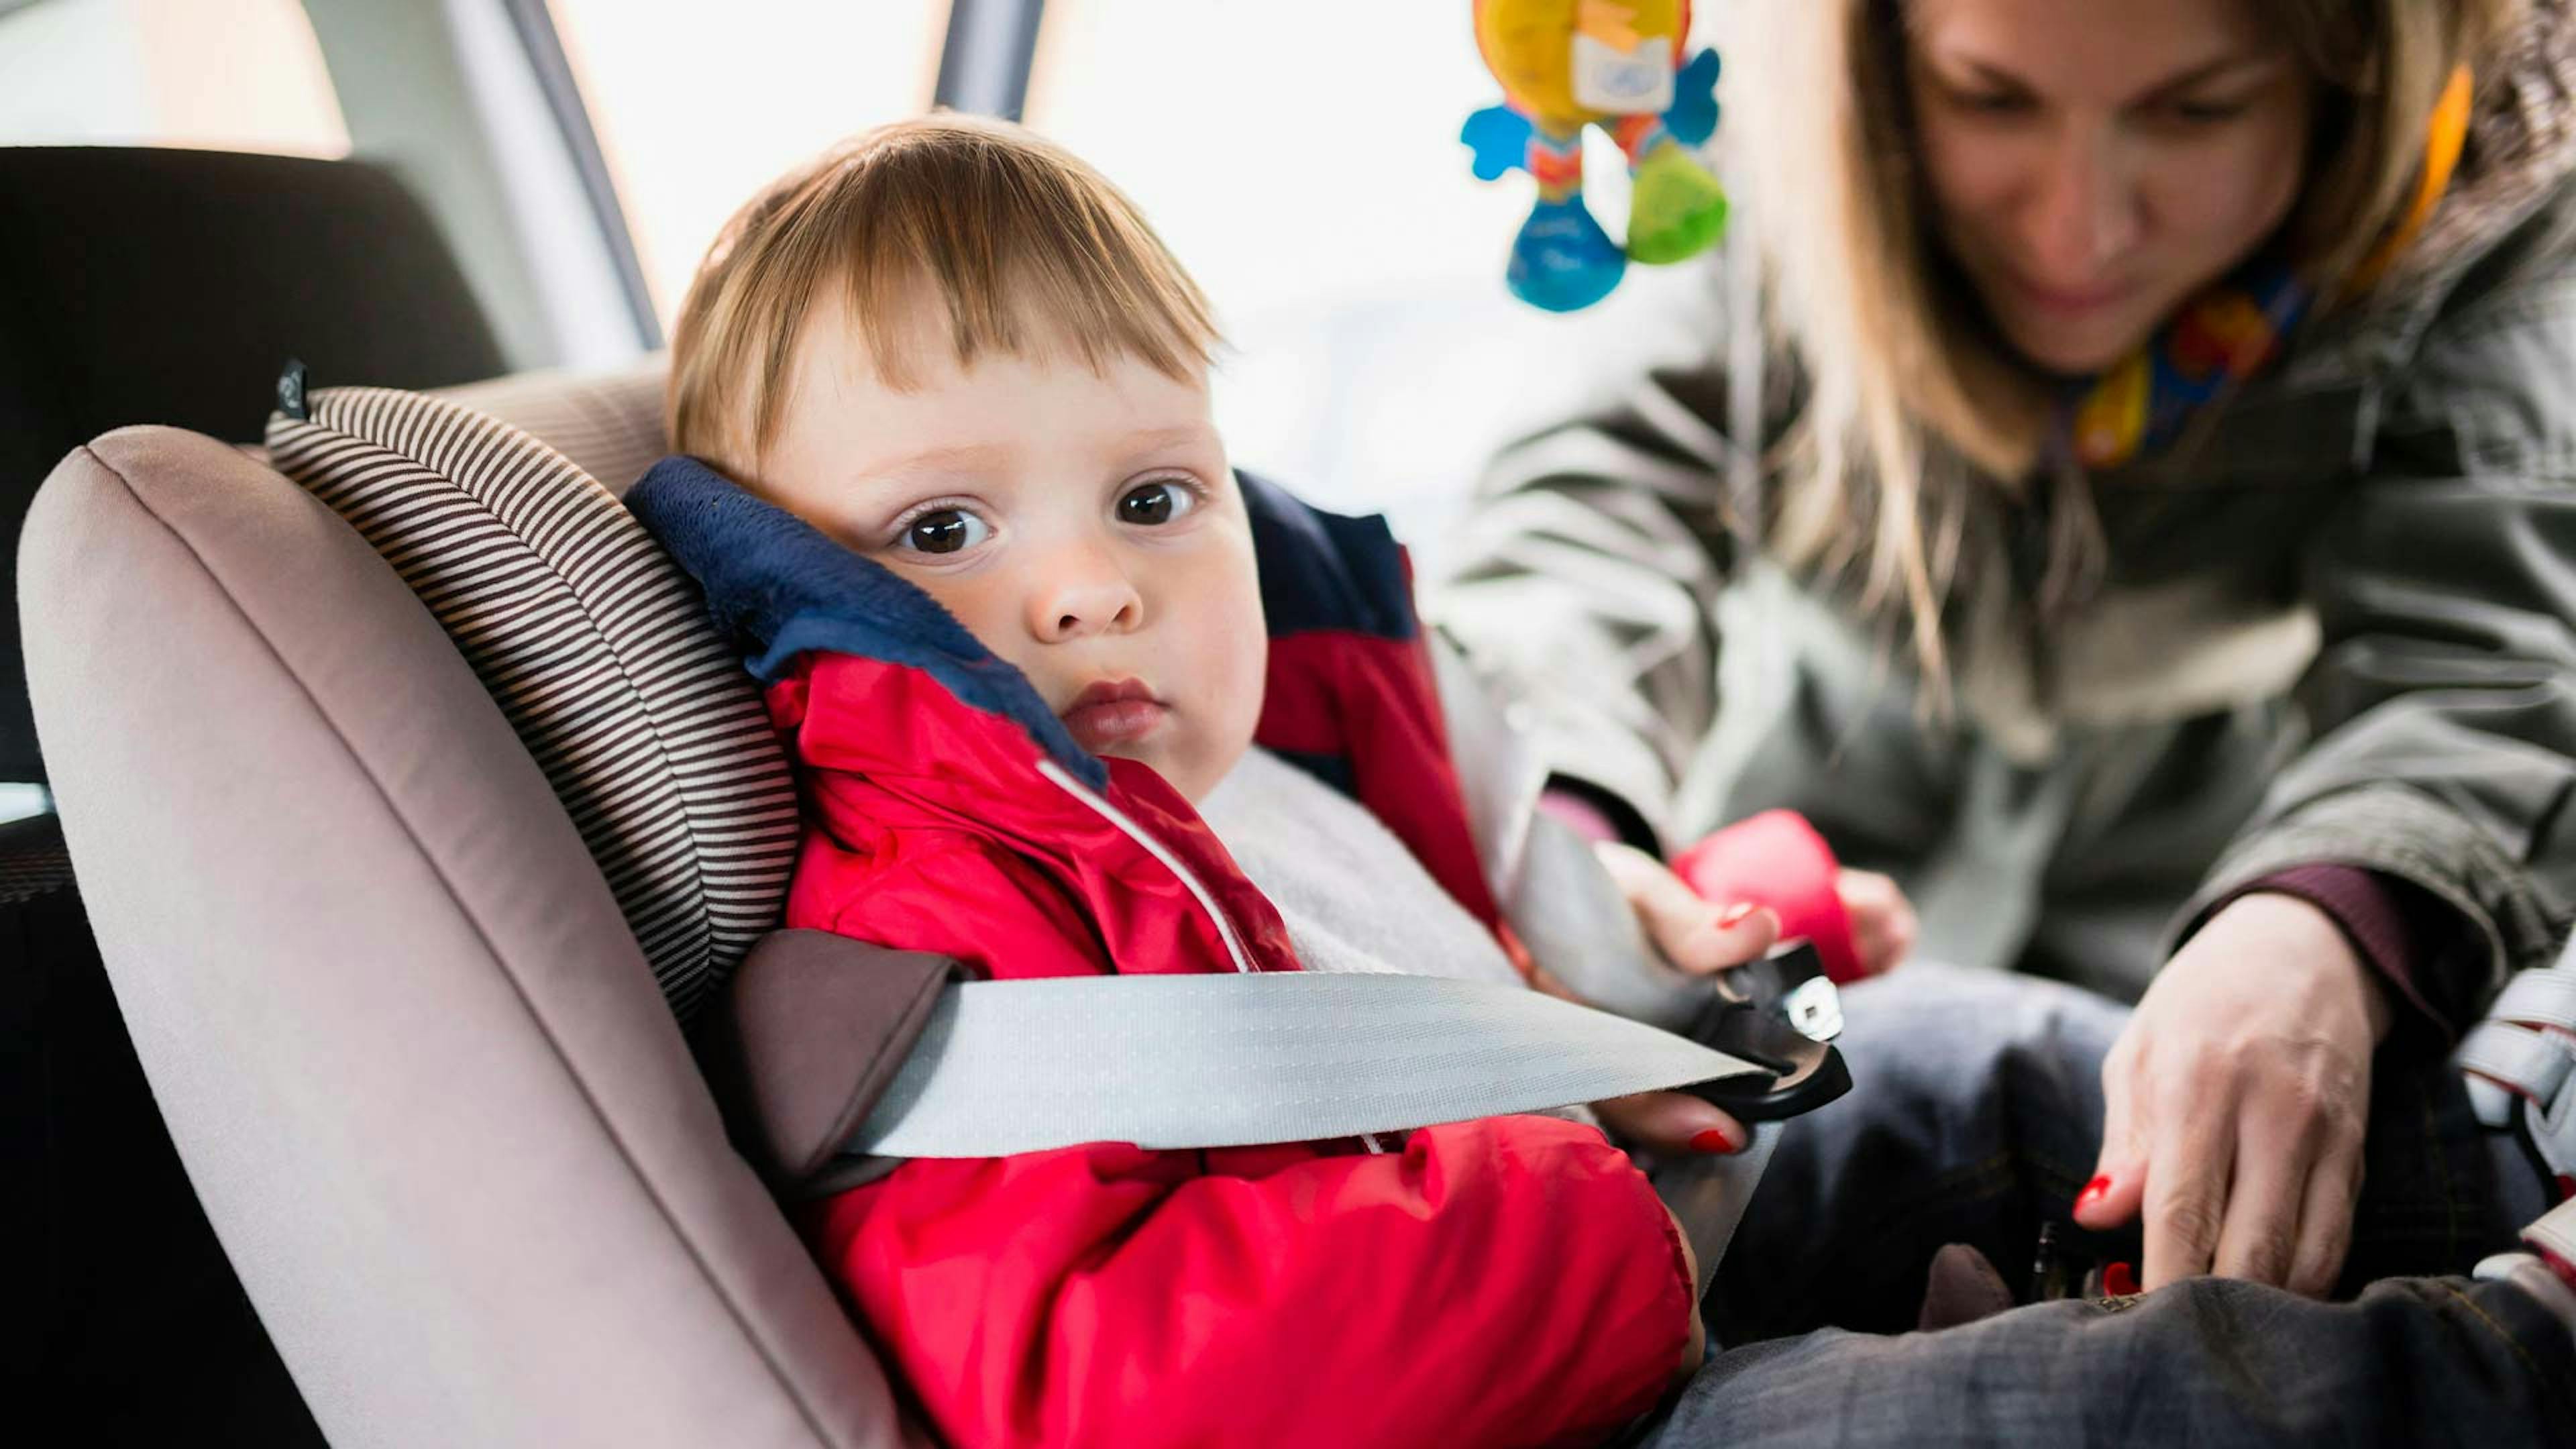 Пристегиваем ребенка в машине. Автокресло для детей. Автомобиль для детей. Ребёнок в автомобиле пристёгнут. Ребенок в детском кресле.